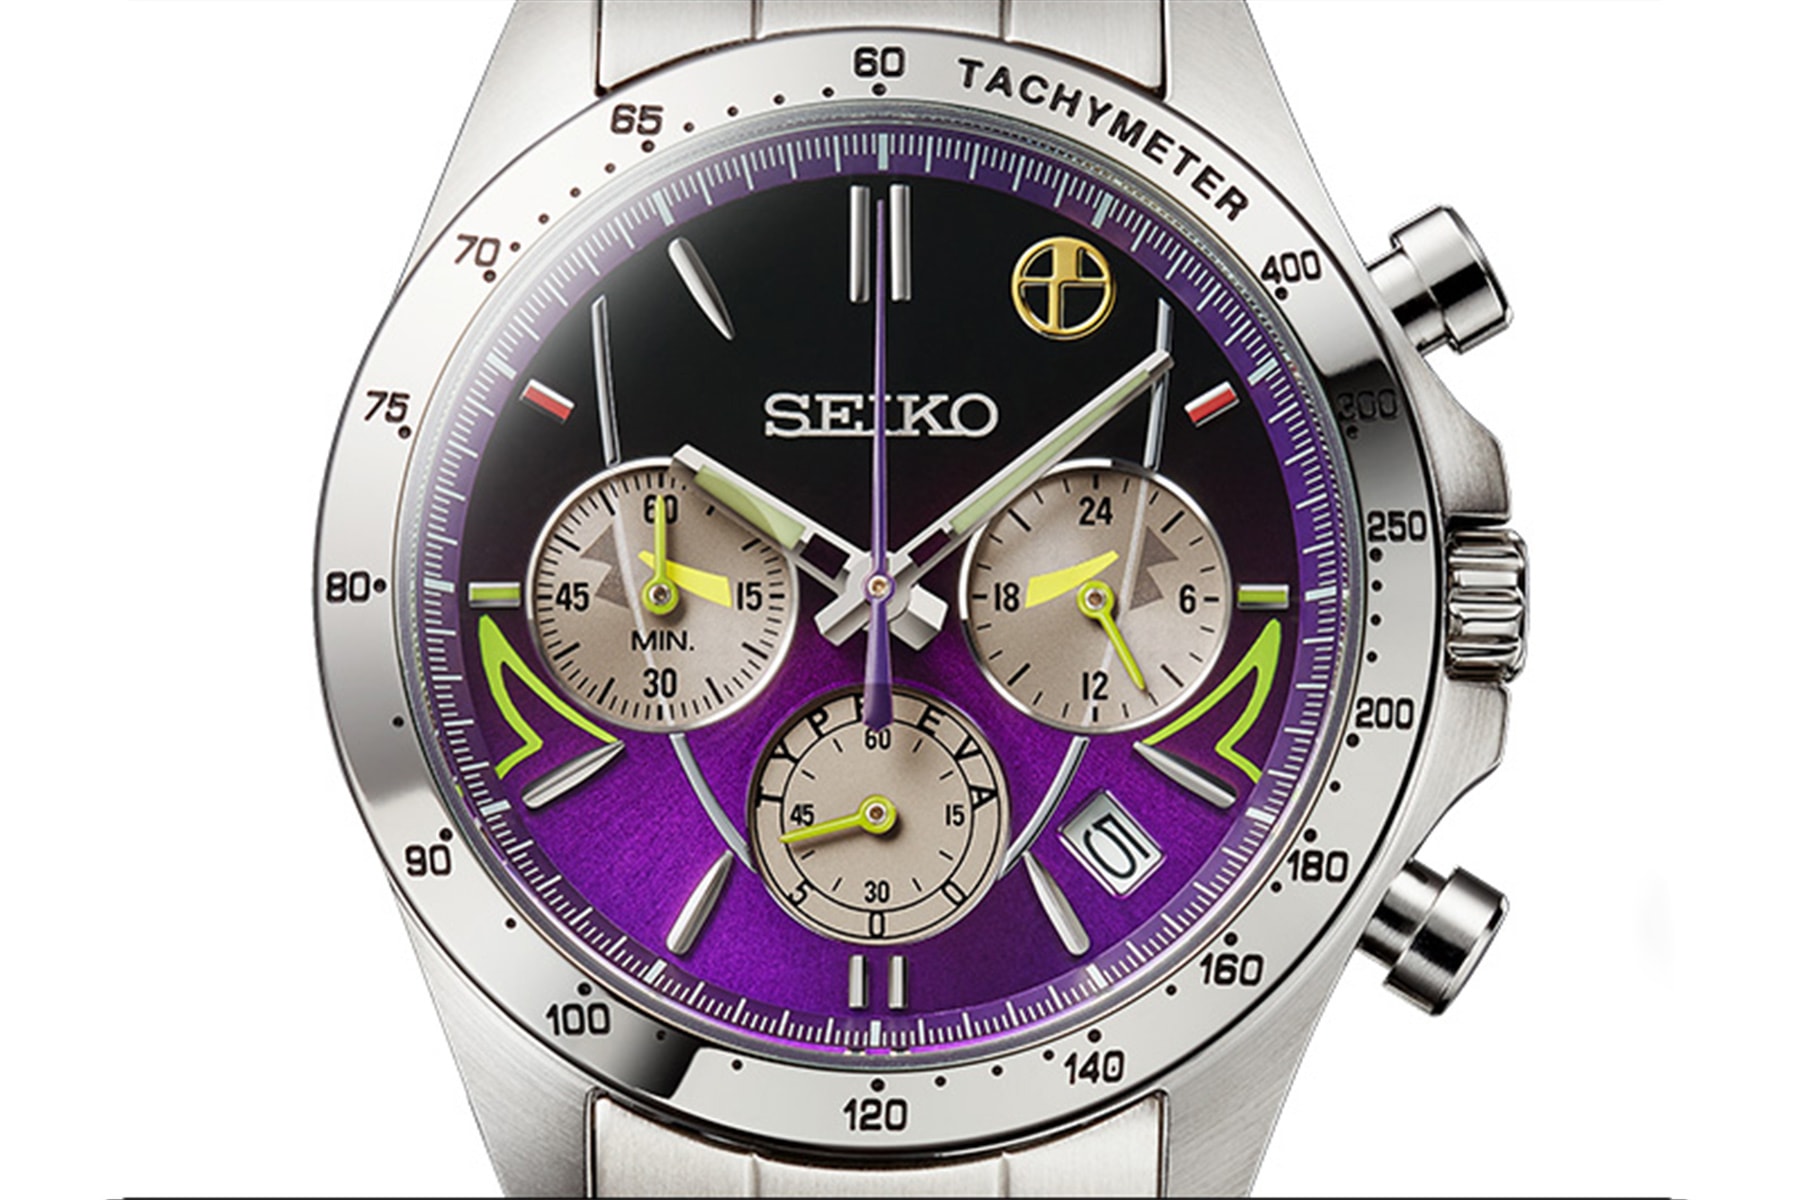 《新世紀福音戰士 Evangelion》x Seiko 全新聯乘錶款正式登場